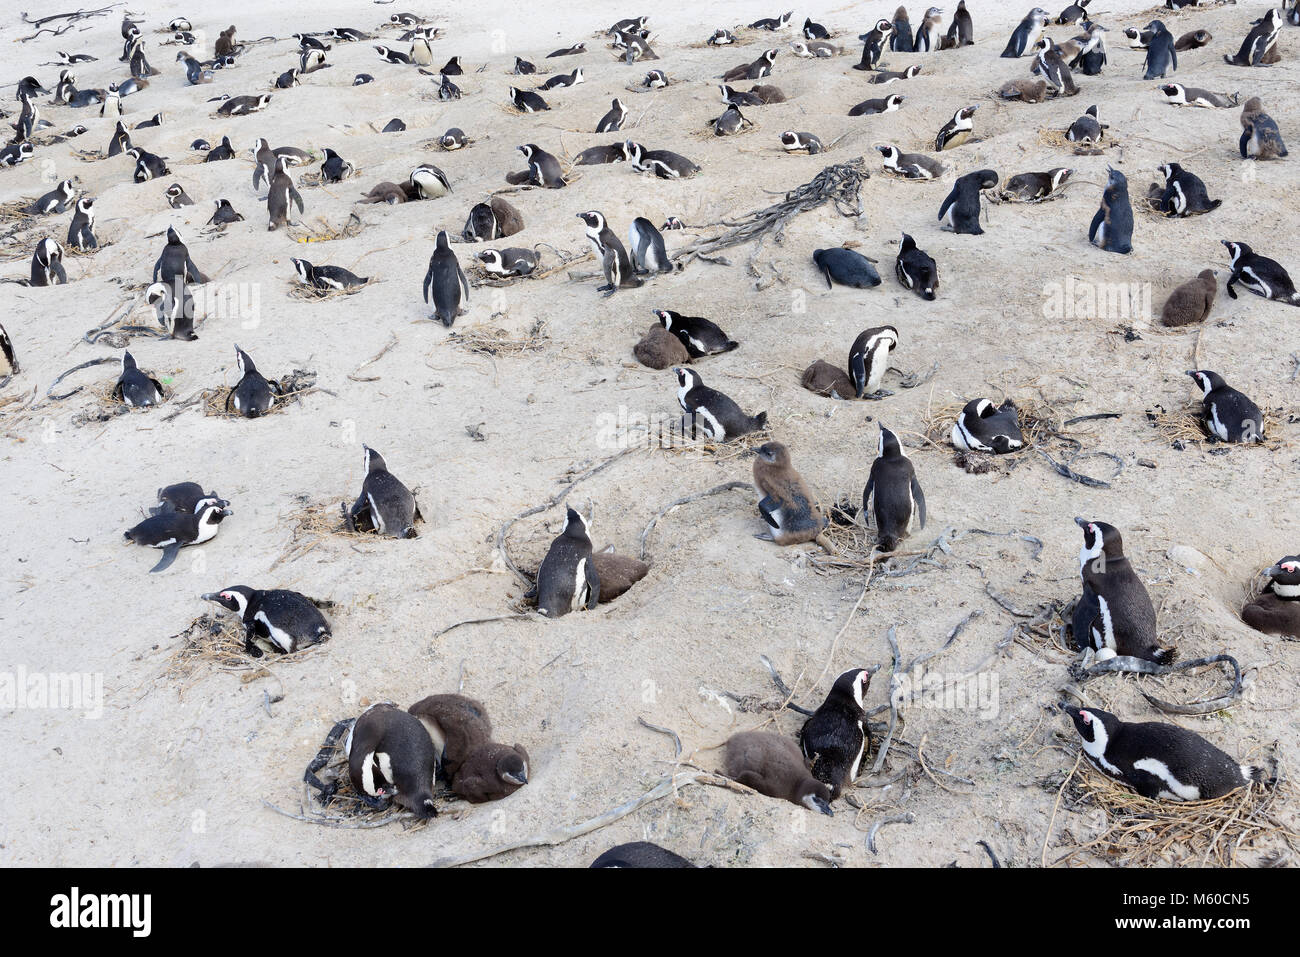 Jackass Penguin, manchot du Cap (Spheniscus demersus). Colonie de reproduction sur une plage. La plage de Boulders, Afrique du Sud Banque D'Images